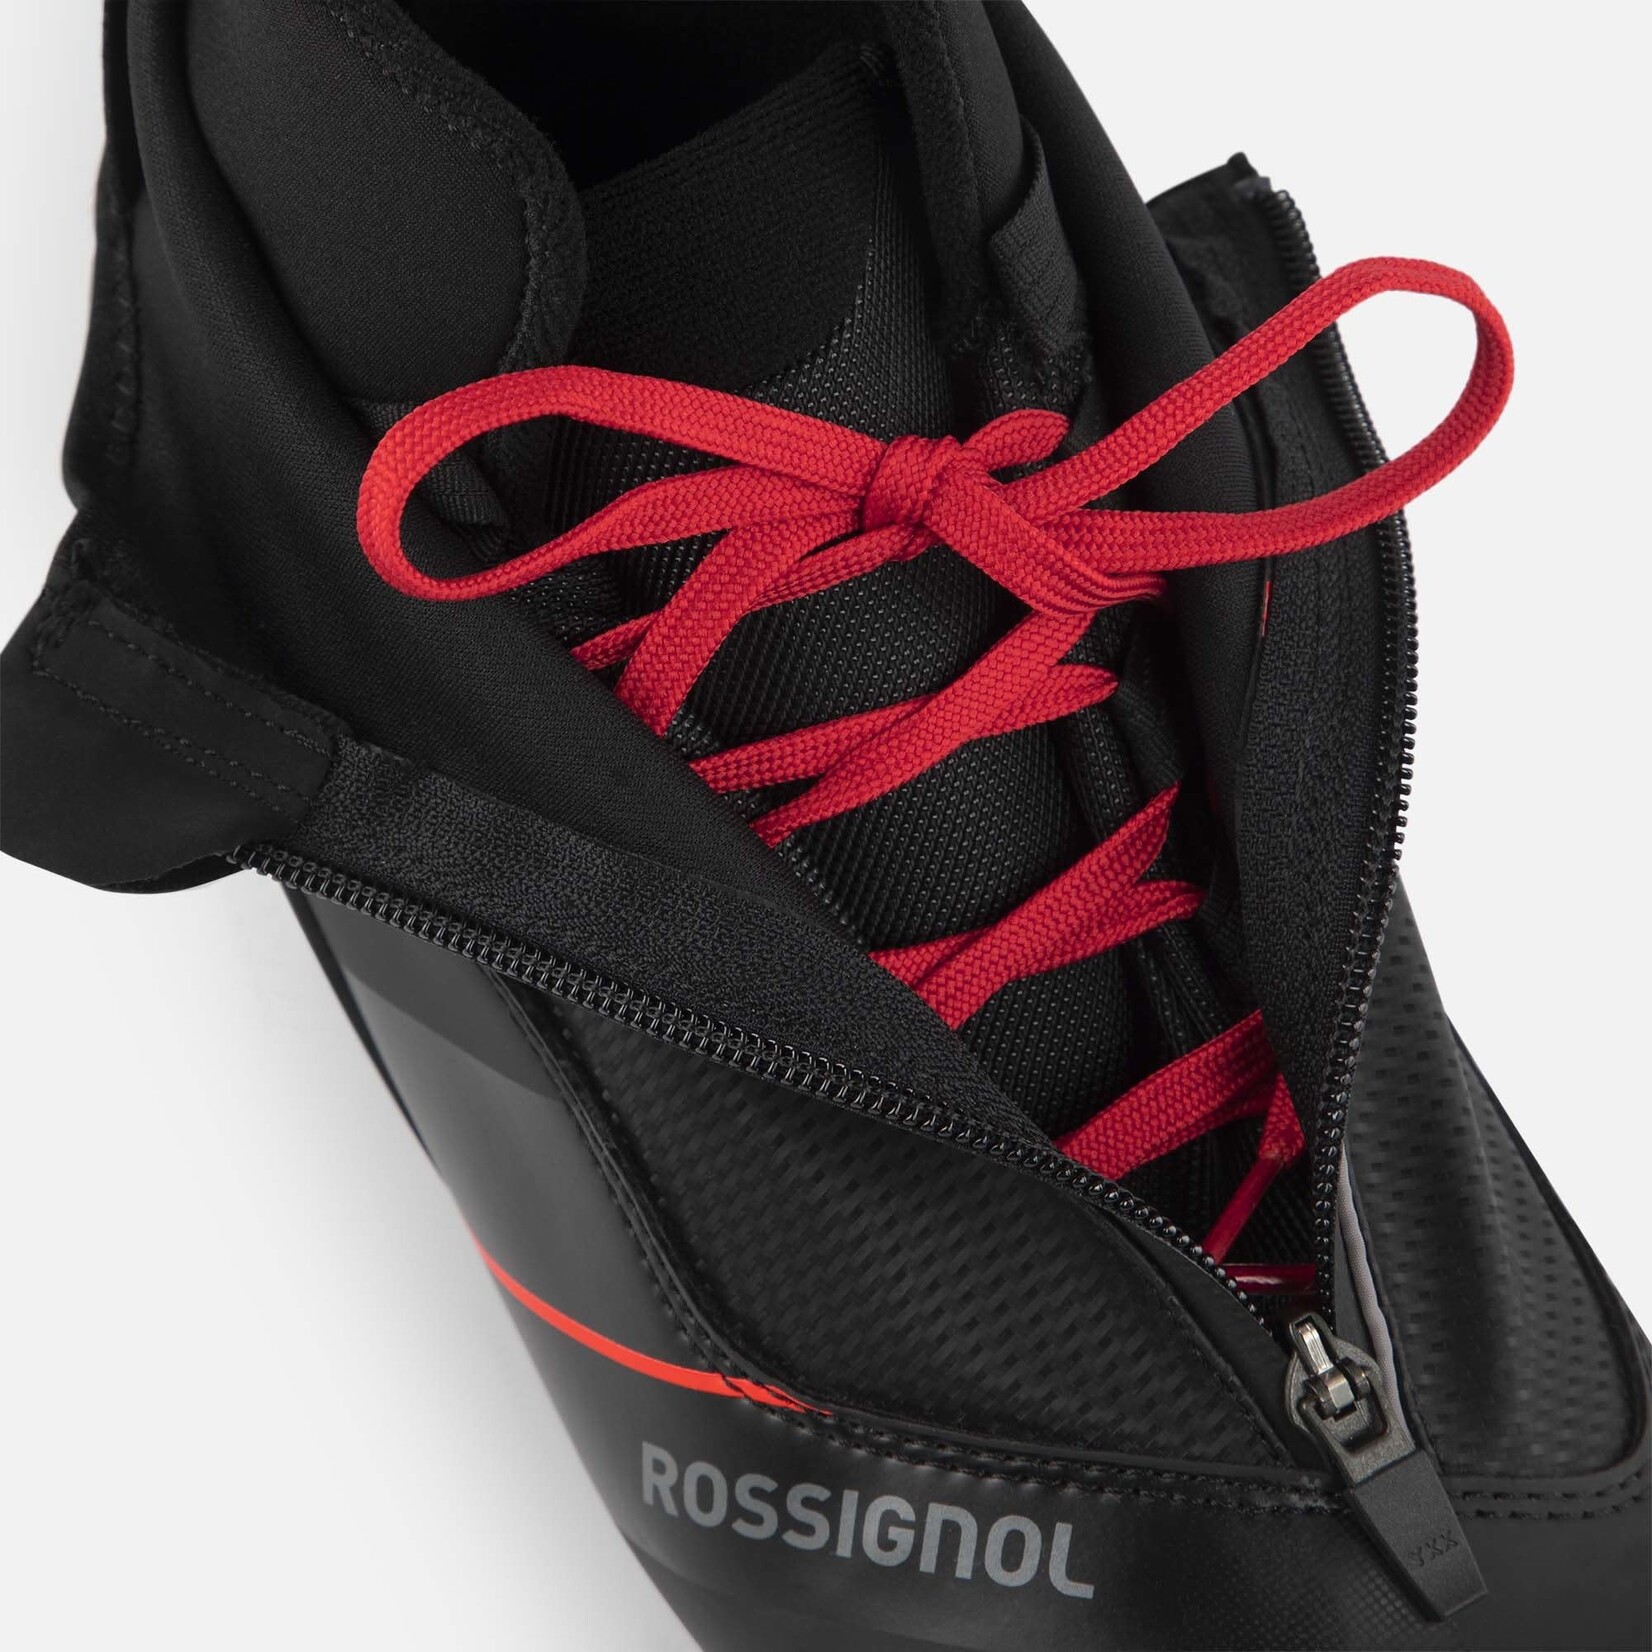 Rossignol X-6 Classic (bottes de ski de fond classiques)